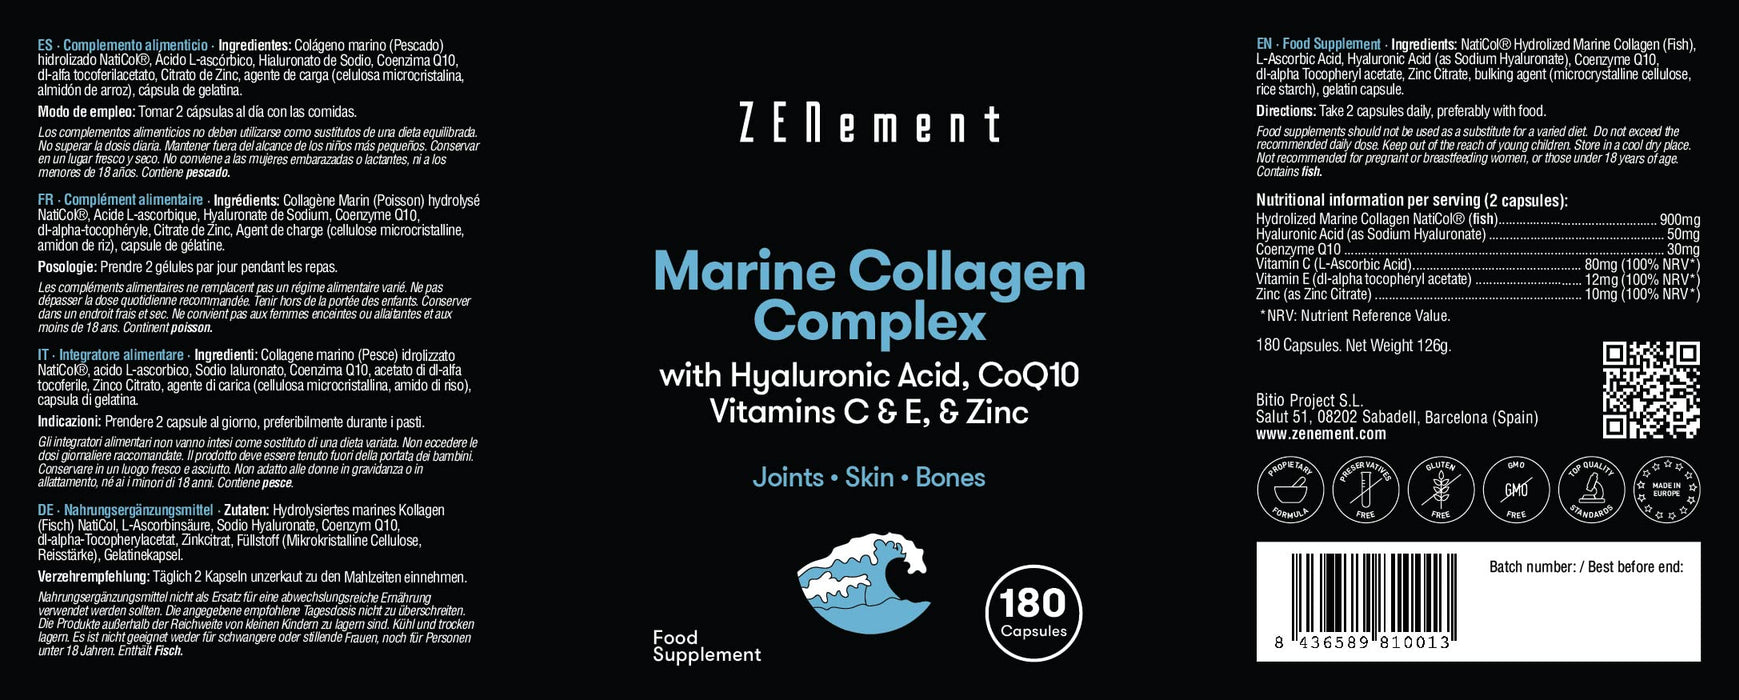 Kompleks kolagenu morskiego, z kwasem hialuronowym, CoQ10, witaminami C i E oraz cynkiem, 180 kapsułek | Peptydy na stawy, skórę i kości | od Zenement